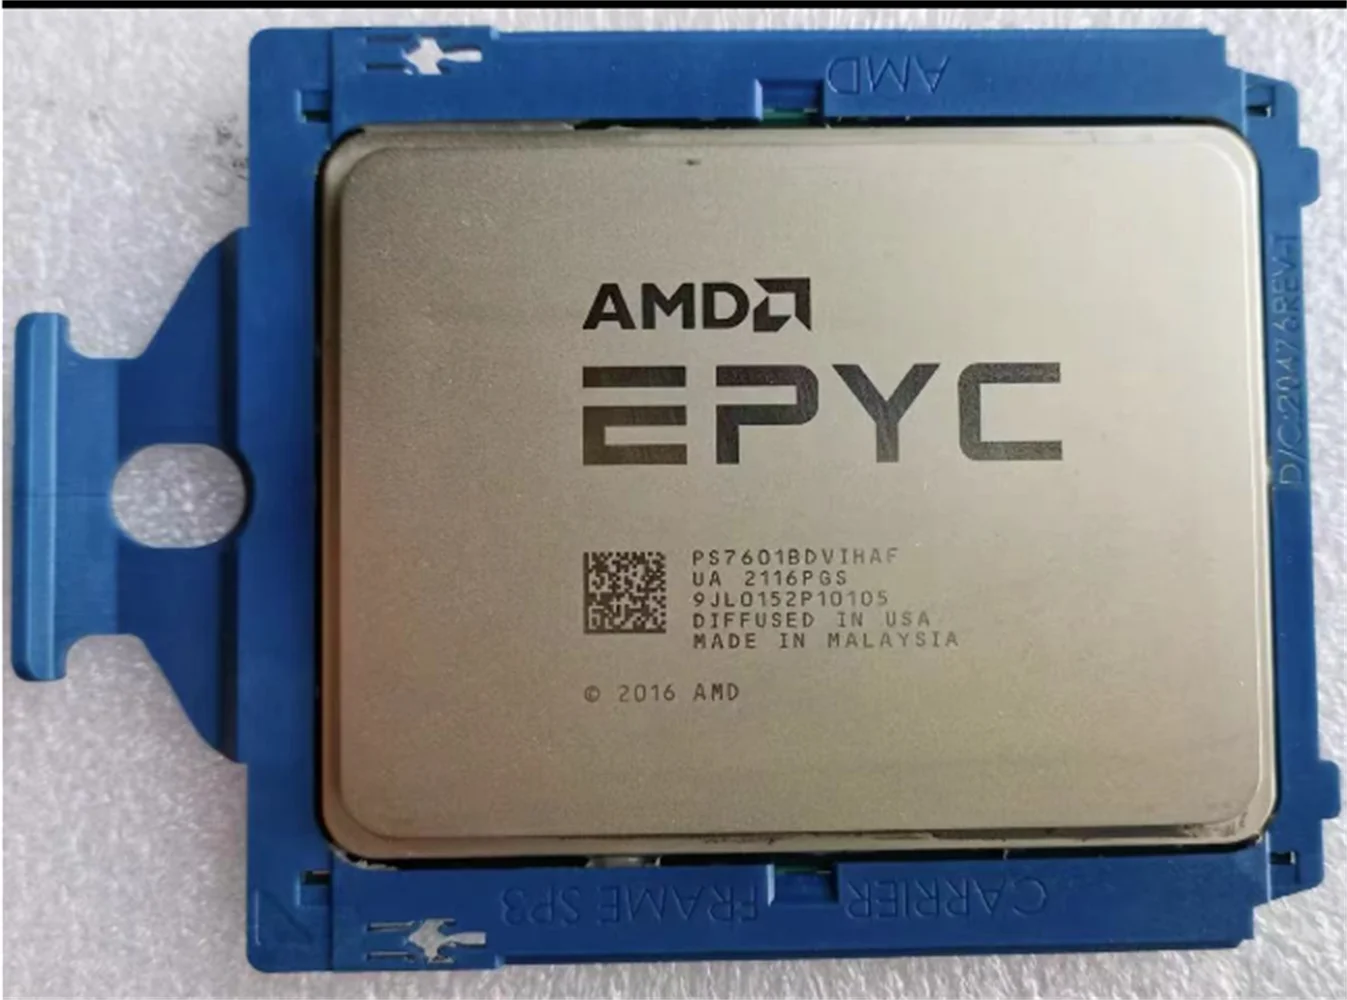 Серверный процессор AMD EPYC 7601 с 32 ядрами/64 потоками 2,2 ГГц, кэш L3 64 МБ, TDP 180 Вт, SP3 с частотой до 3,2 ГГц серии 7001